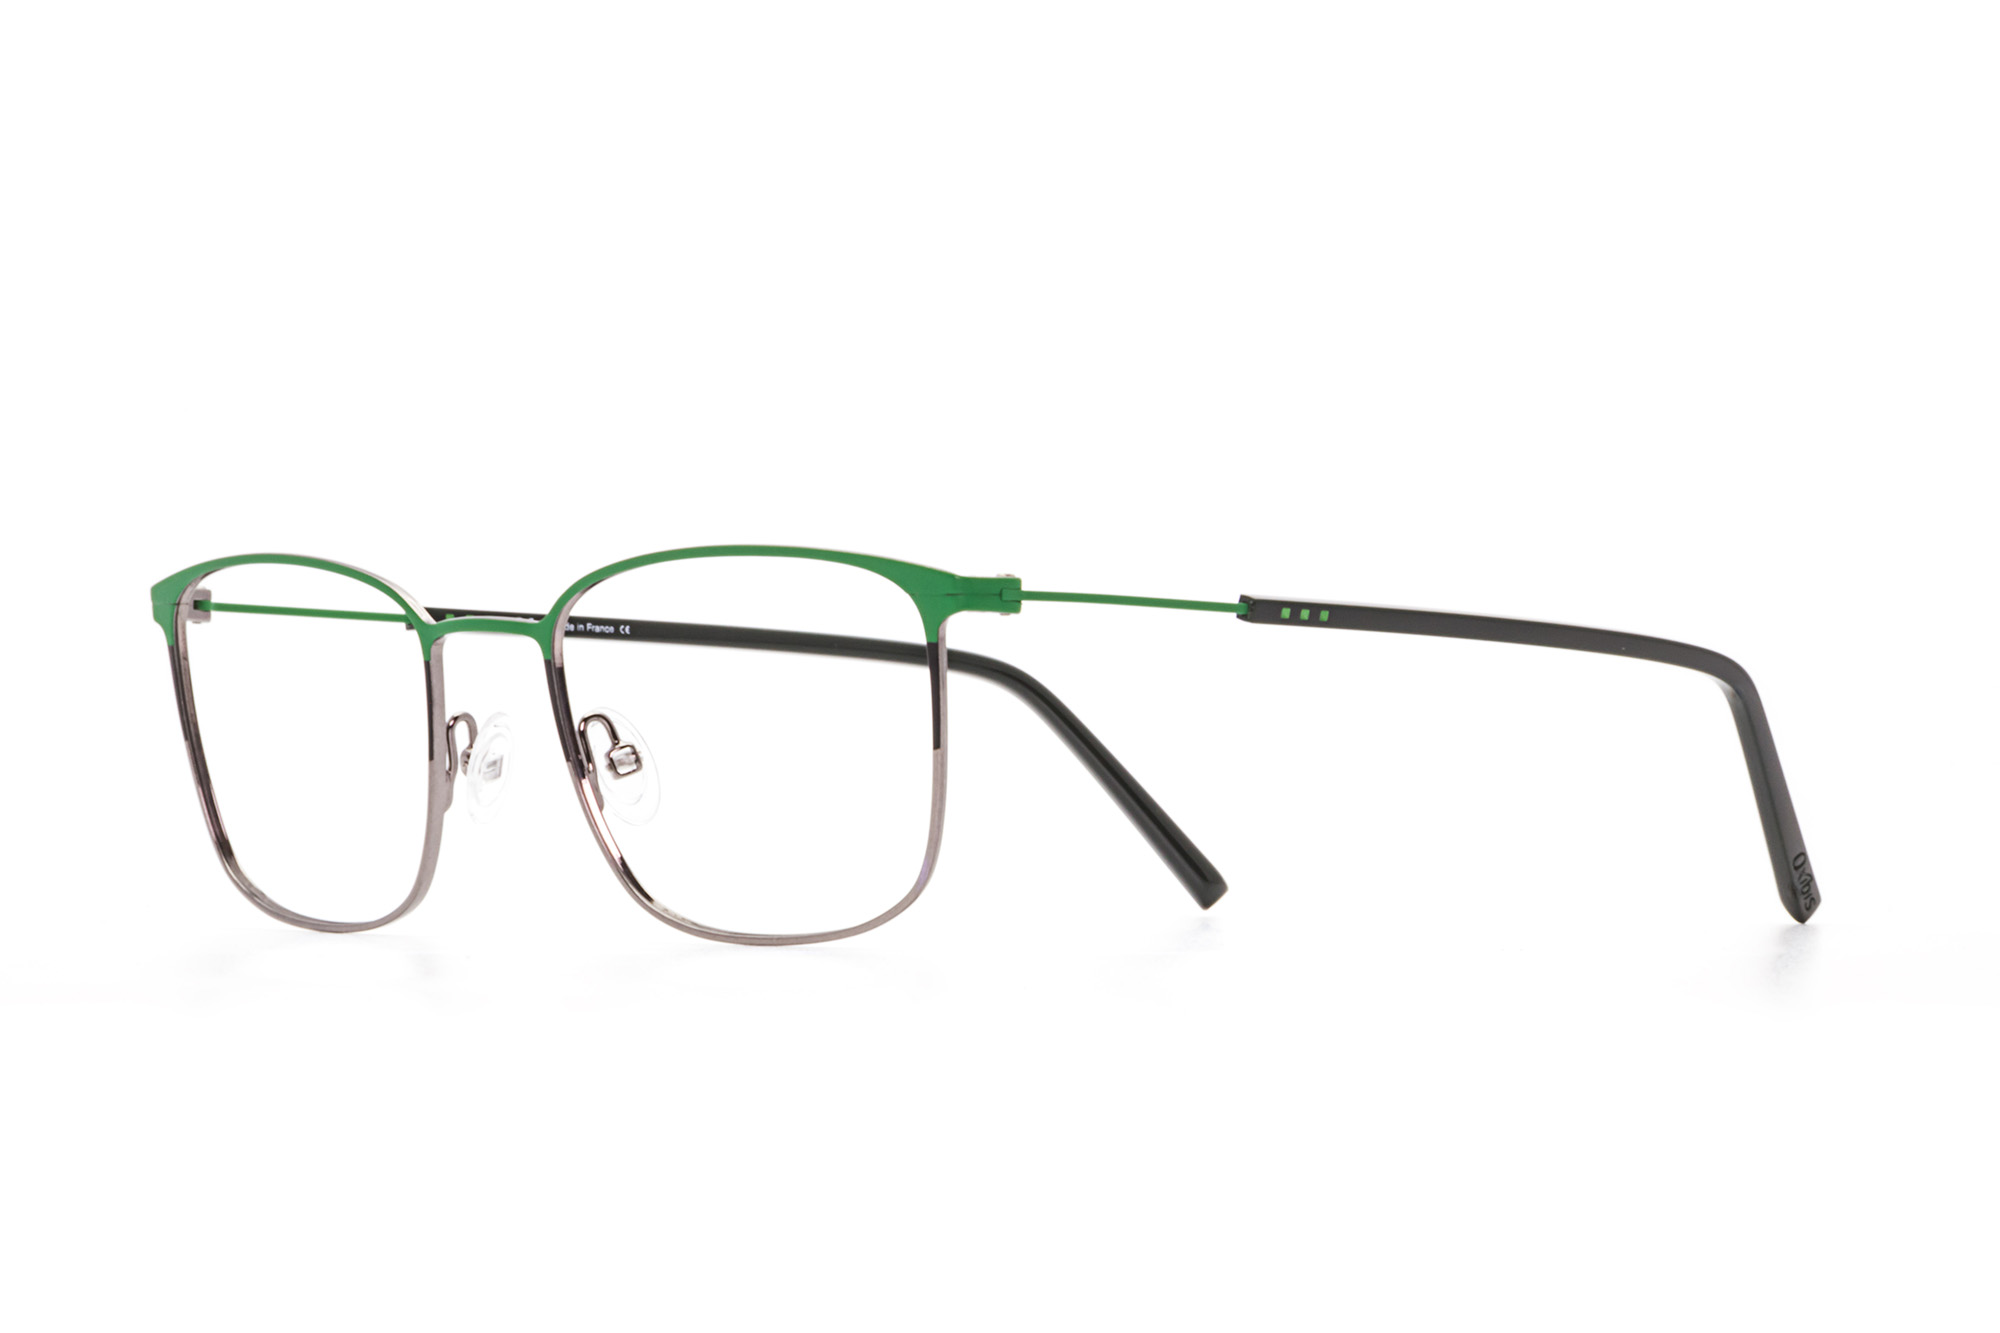 Kullanıma hazır optik tarzda işlenmiş camları ve optik uyumlu çerçevesiyle Oxibis Boost BO3C8 51 orta ekartman yeşil, siyah ve gri renkli dikdörtgen model erkek gözlüğünü optisyen veya gözlükçülerin sunacağı numarasız veya numaralı cam özelleştirmeleriyle size en yakın gözlükçüden satın alabilirsiniz.